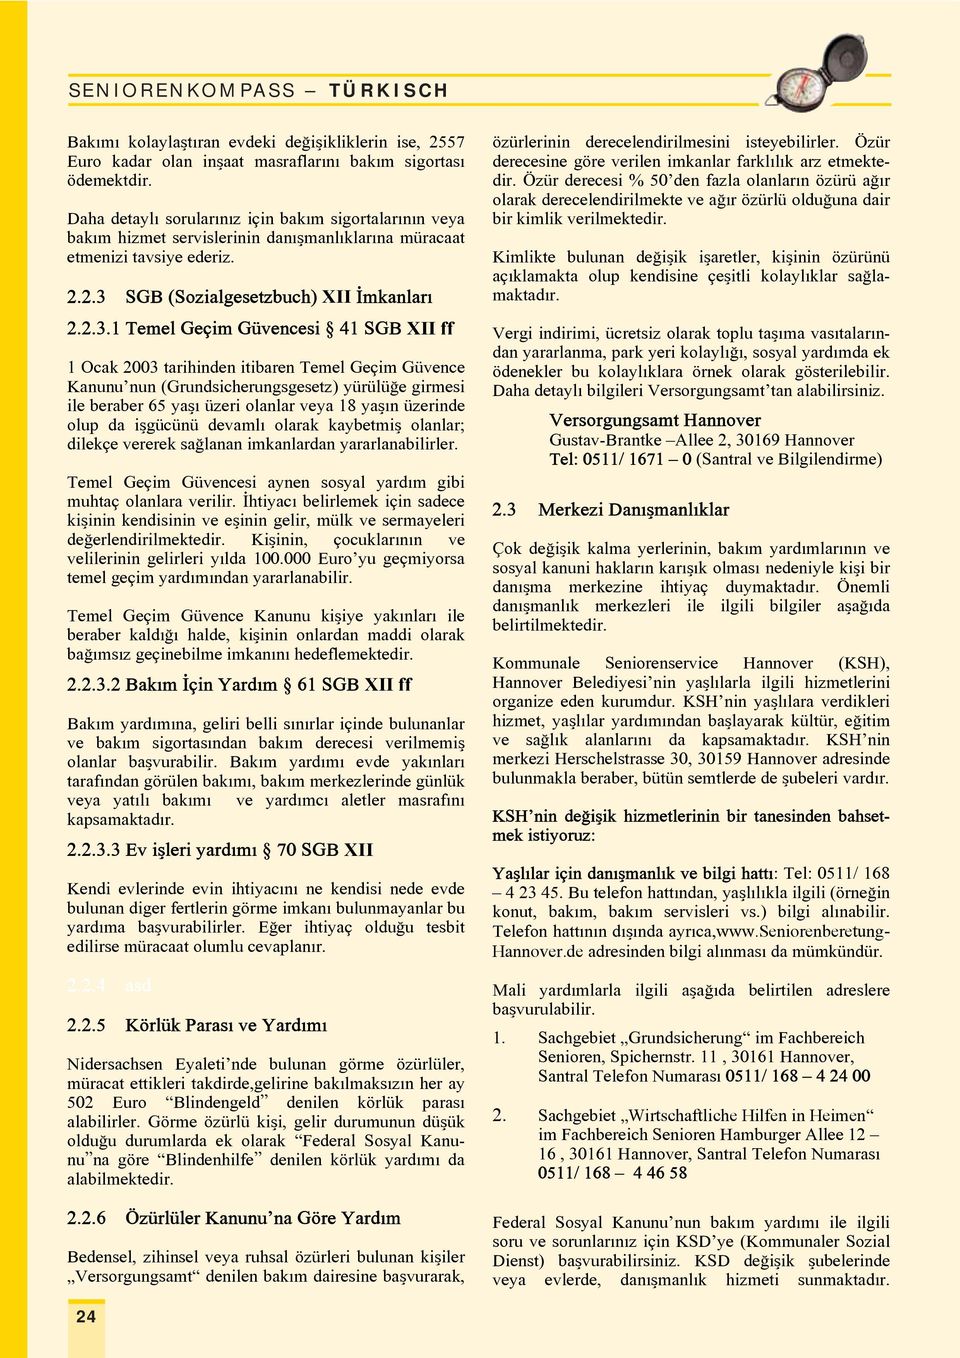 SGB (Sozialgesetzbuch) XII Imkanlarx 2.2.3.